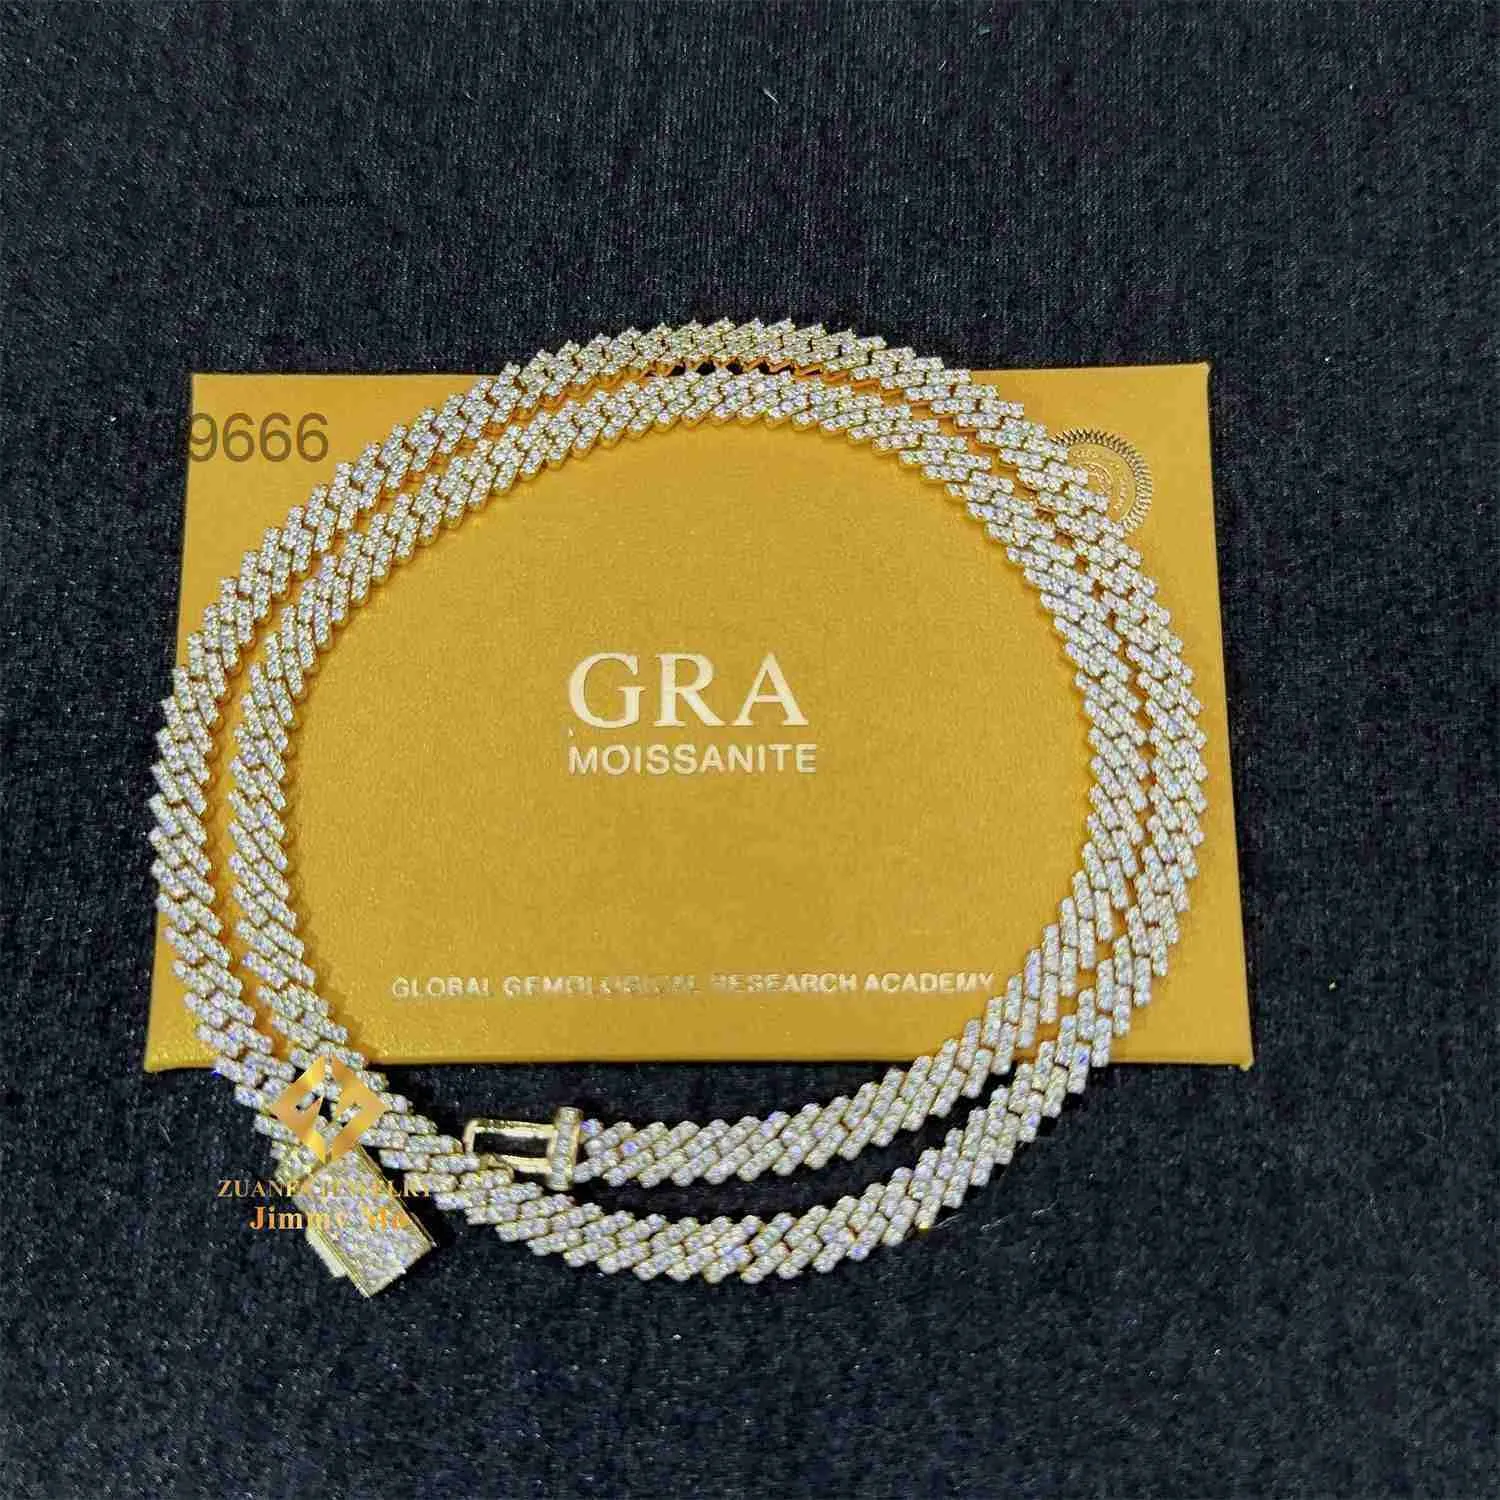 Breite 5 mm, eine Reihe, Iced Out-Mann-Schmuck, Gra-Zertifikate, bestandener Diamanttester, Vvs1, kubanische Gliederkette mit Moissanit-Motiv, Halskette EGX5 EGX53959 3959